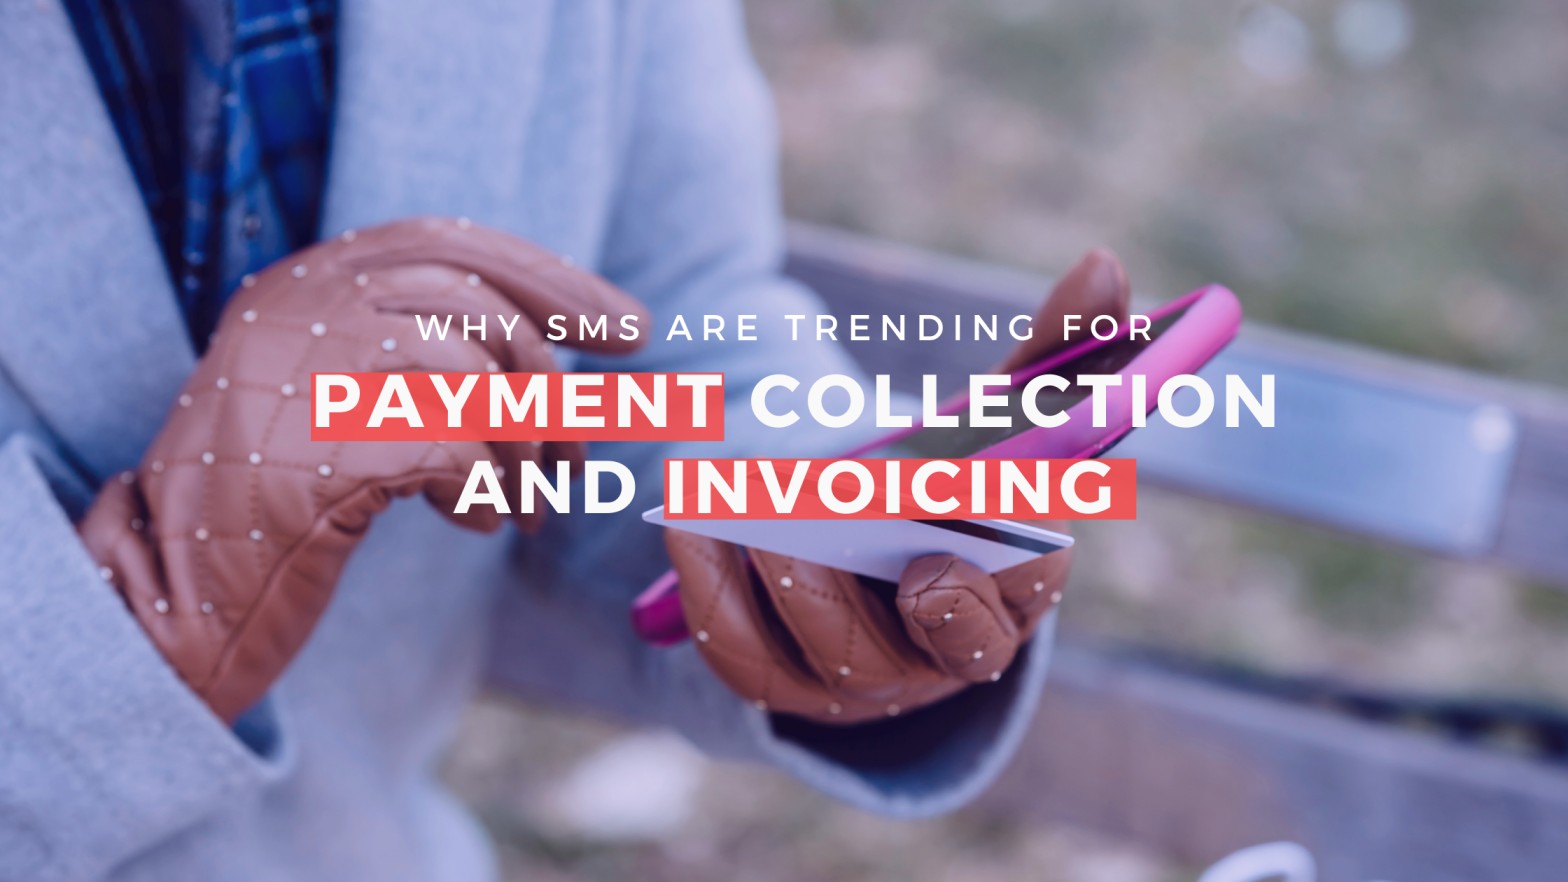 Make payments more convenient